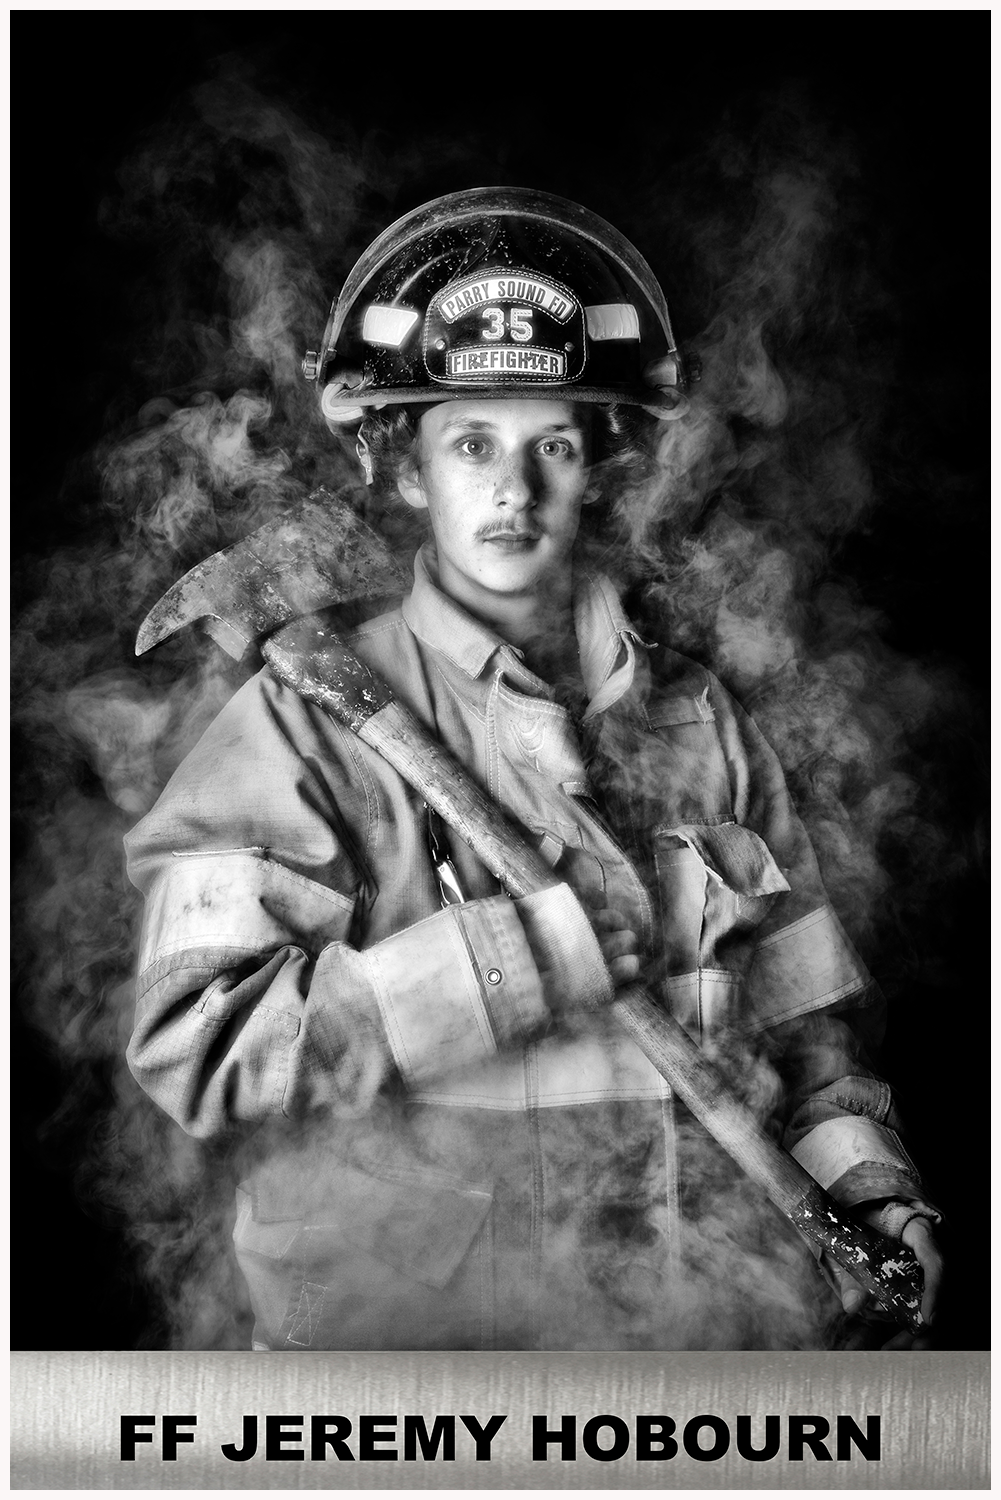 Firefighter Jeremy Hobourn